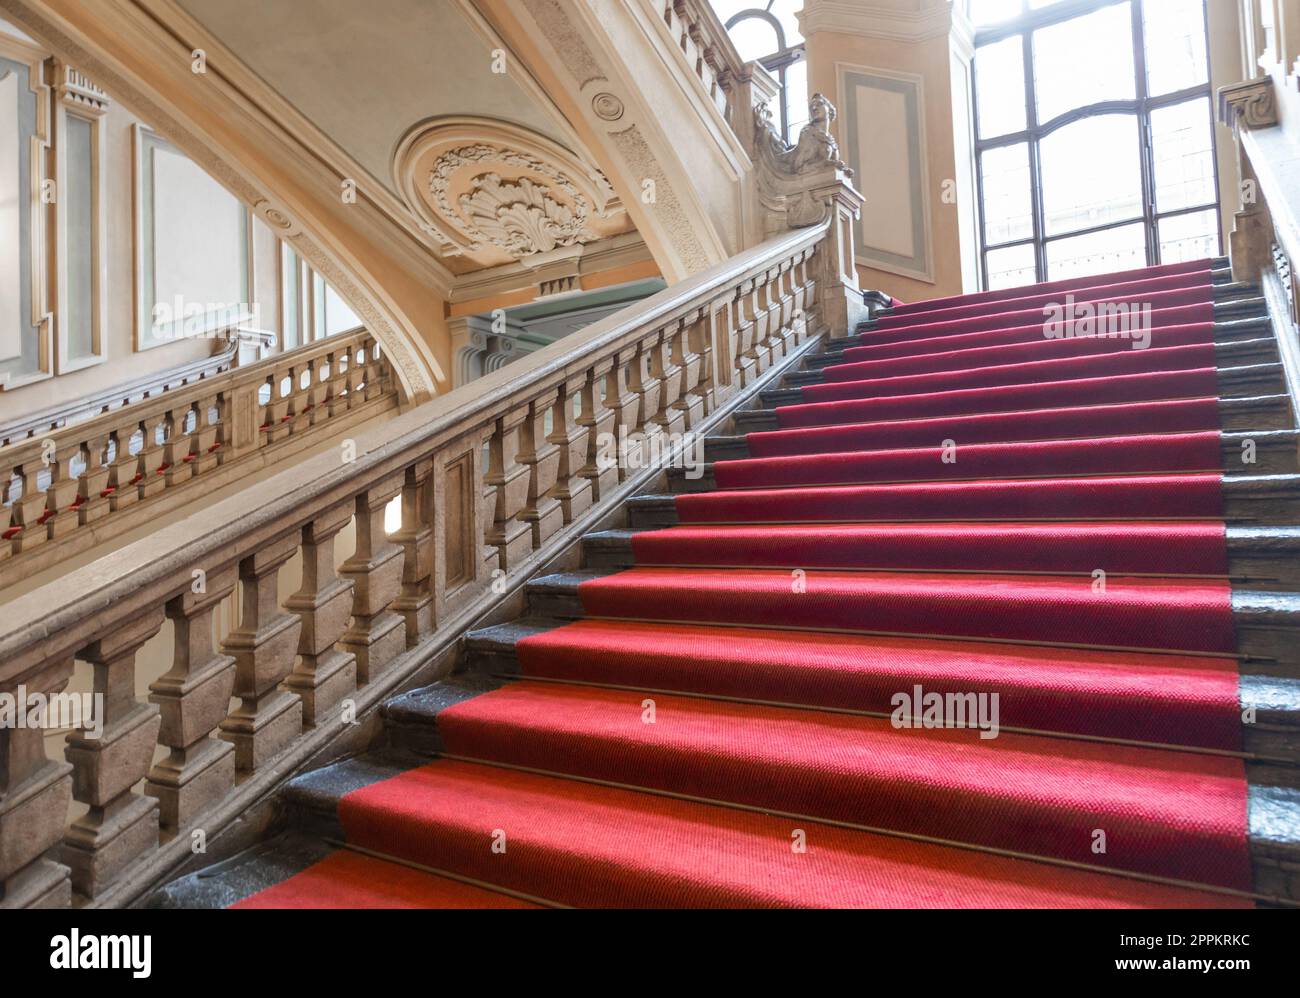 Turin, Italie - escalier Palazzo Barolo. Palais de luxe avec intérieur baroque ancien et tapis rouge Banque D'Images